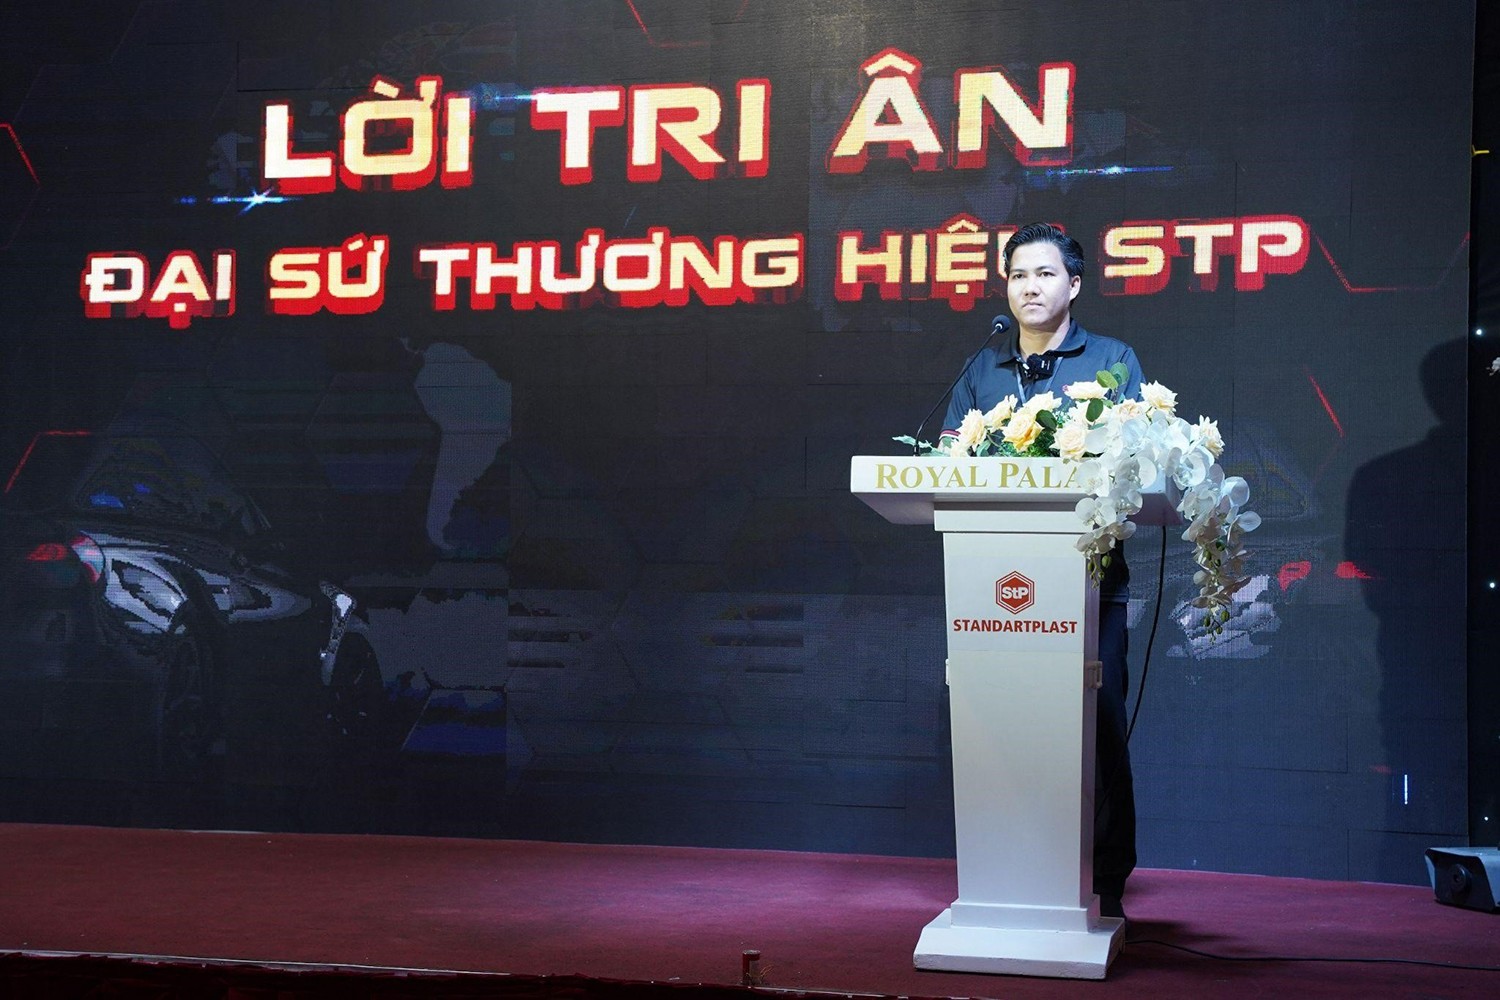 Ông Lê Văn Khá - Giám đốc POAUTO.VN trong buổi lễ Ký kết Đại sứ thương hiệu StP